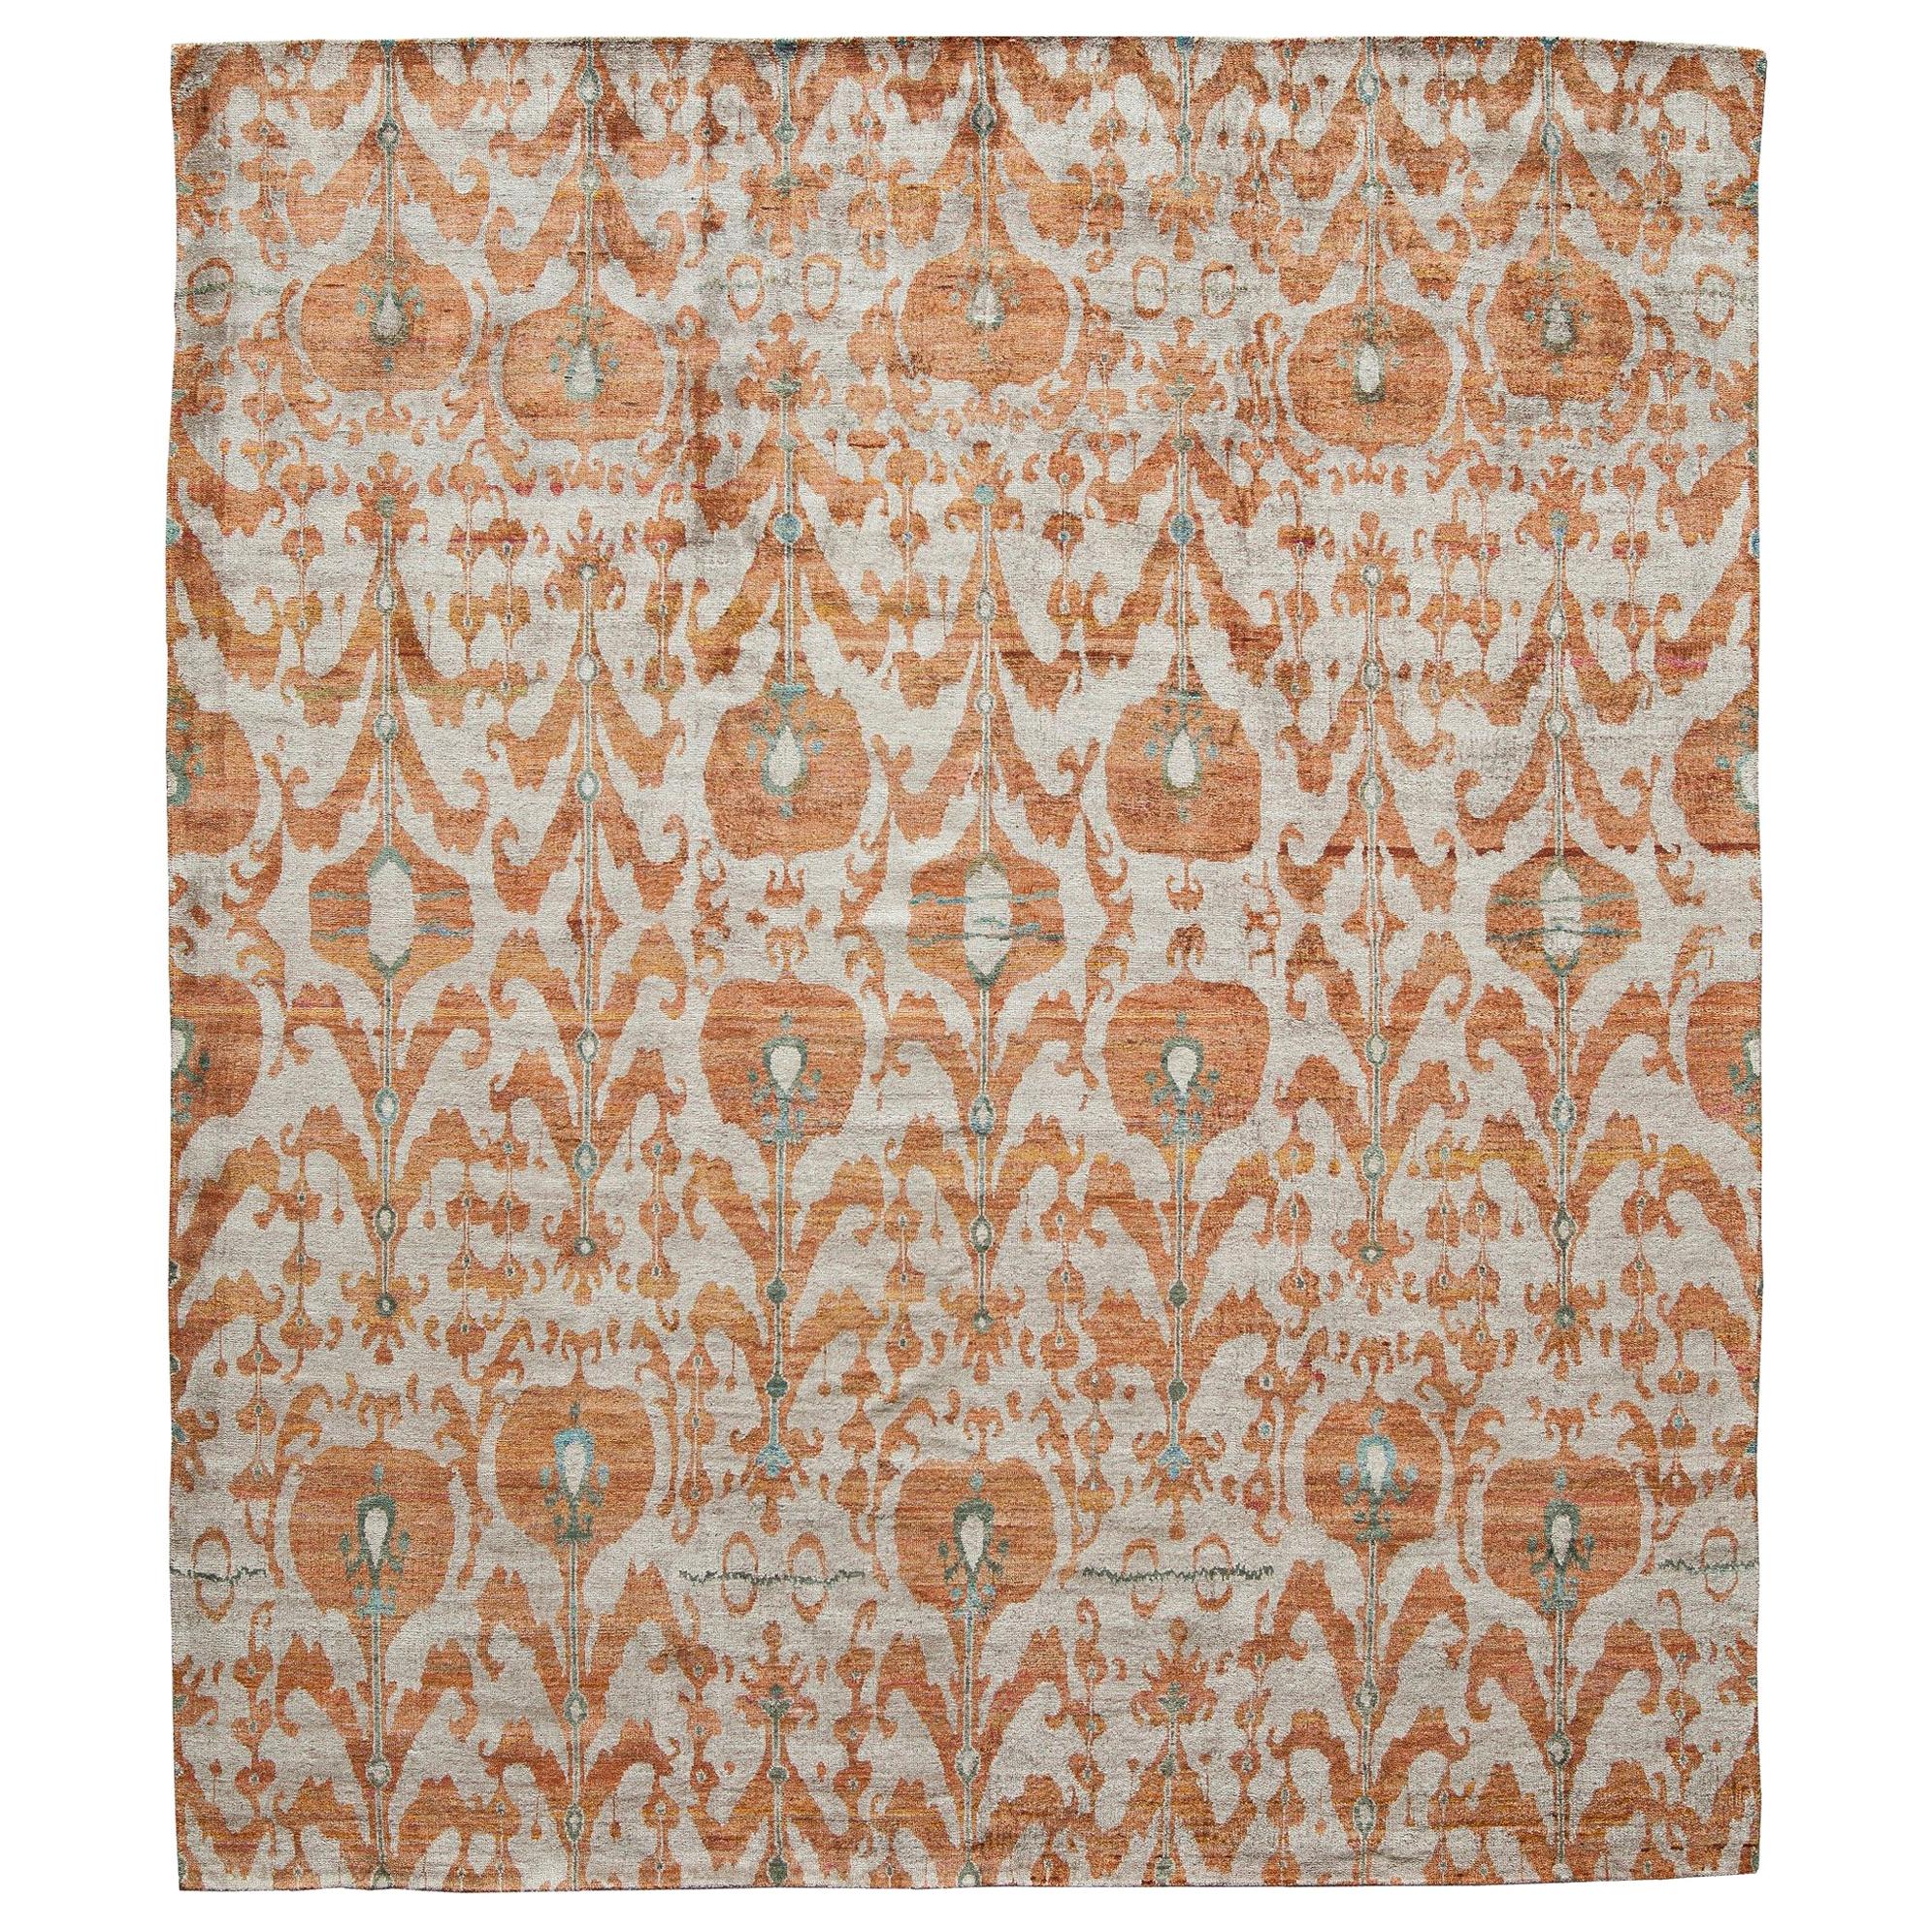 Handgeknüpfter Ikat-Teppich aus Seide, Rost, gebrannt, orange und silber